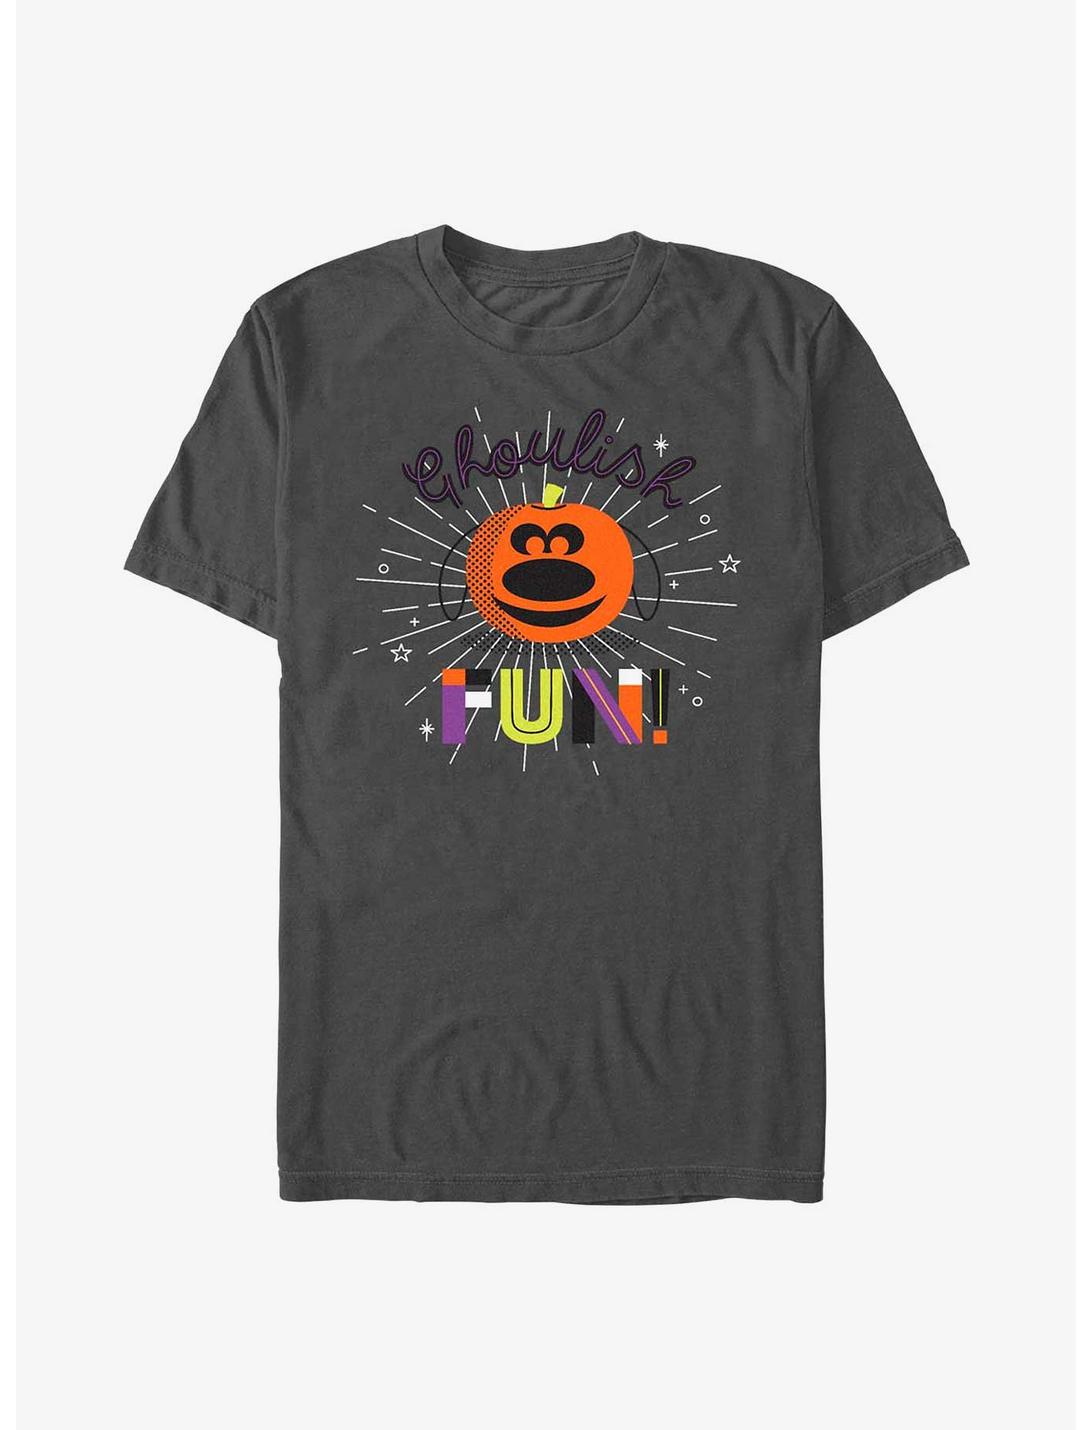 Disney Pixar Up Dug's Ghoulish Fun! T-Shirt, CHARCOAL, hi-res